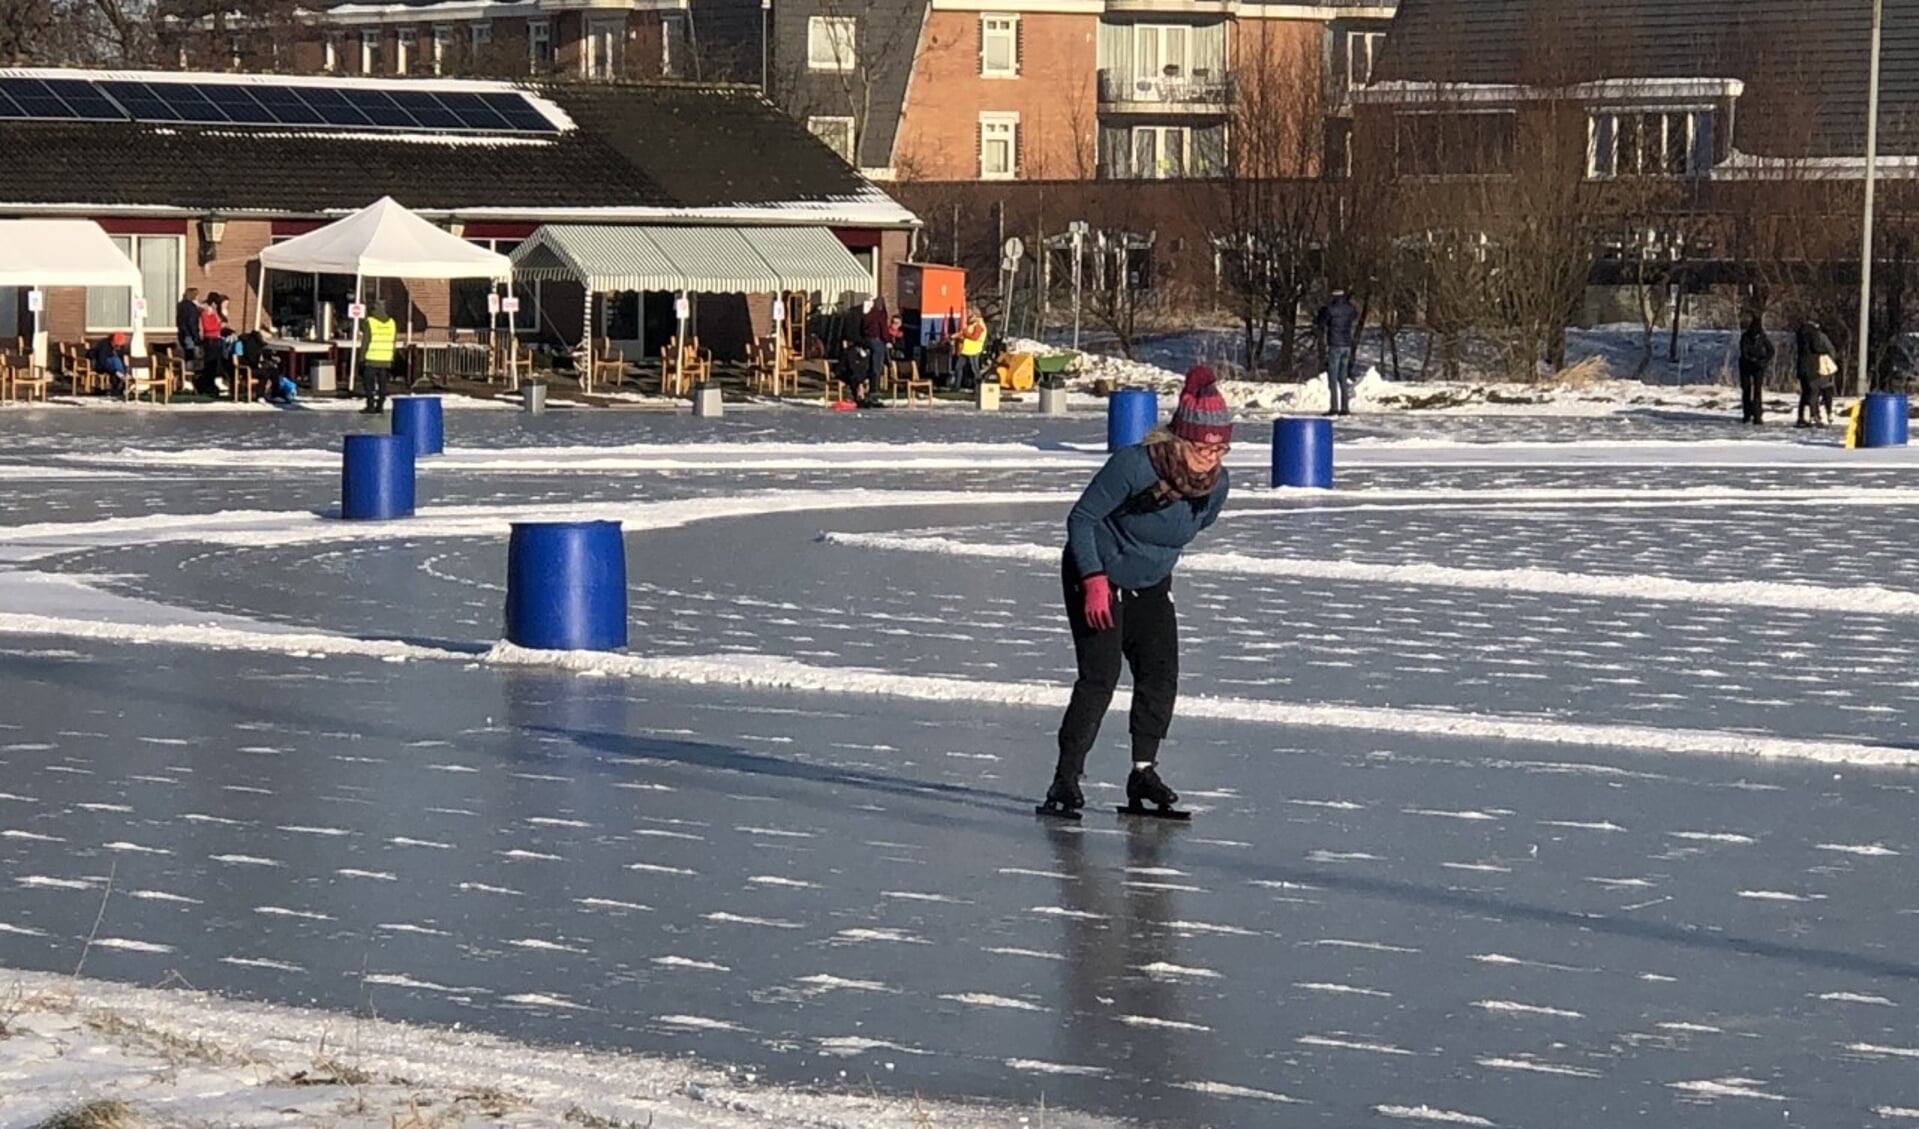 De eerste schaatser die zich op het gladde ijs waagt!